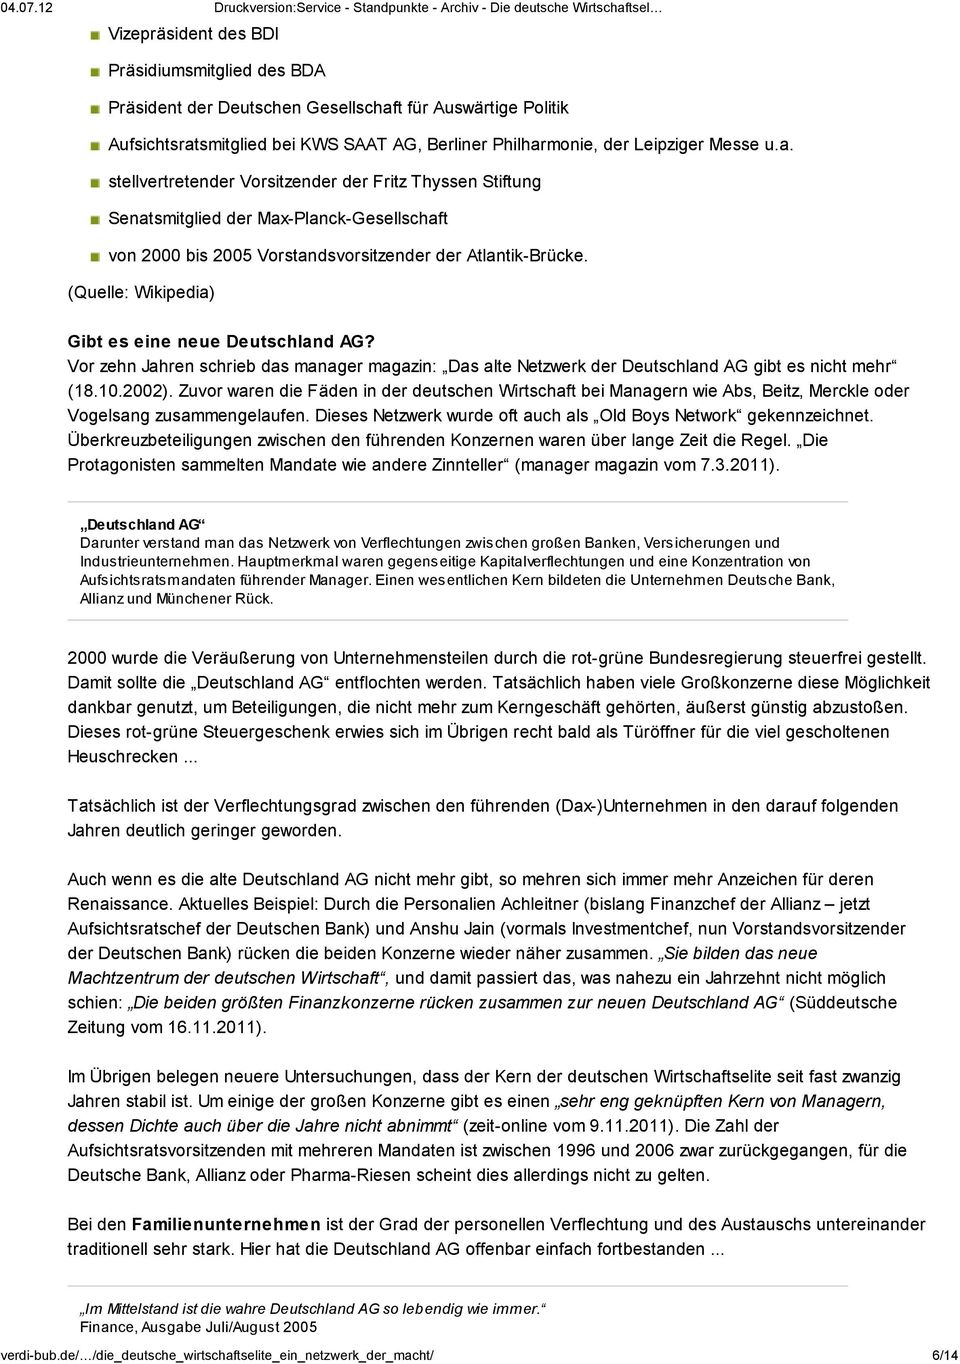 (Quelle: Wikipedia) Gibt es eine neue Deutschland AG? Vor zehn Jahren schrieb das manager magazin: Das alte Netzwerk der Deutschland AG gibt es nicht mehr (18.10.2002).